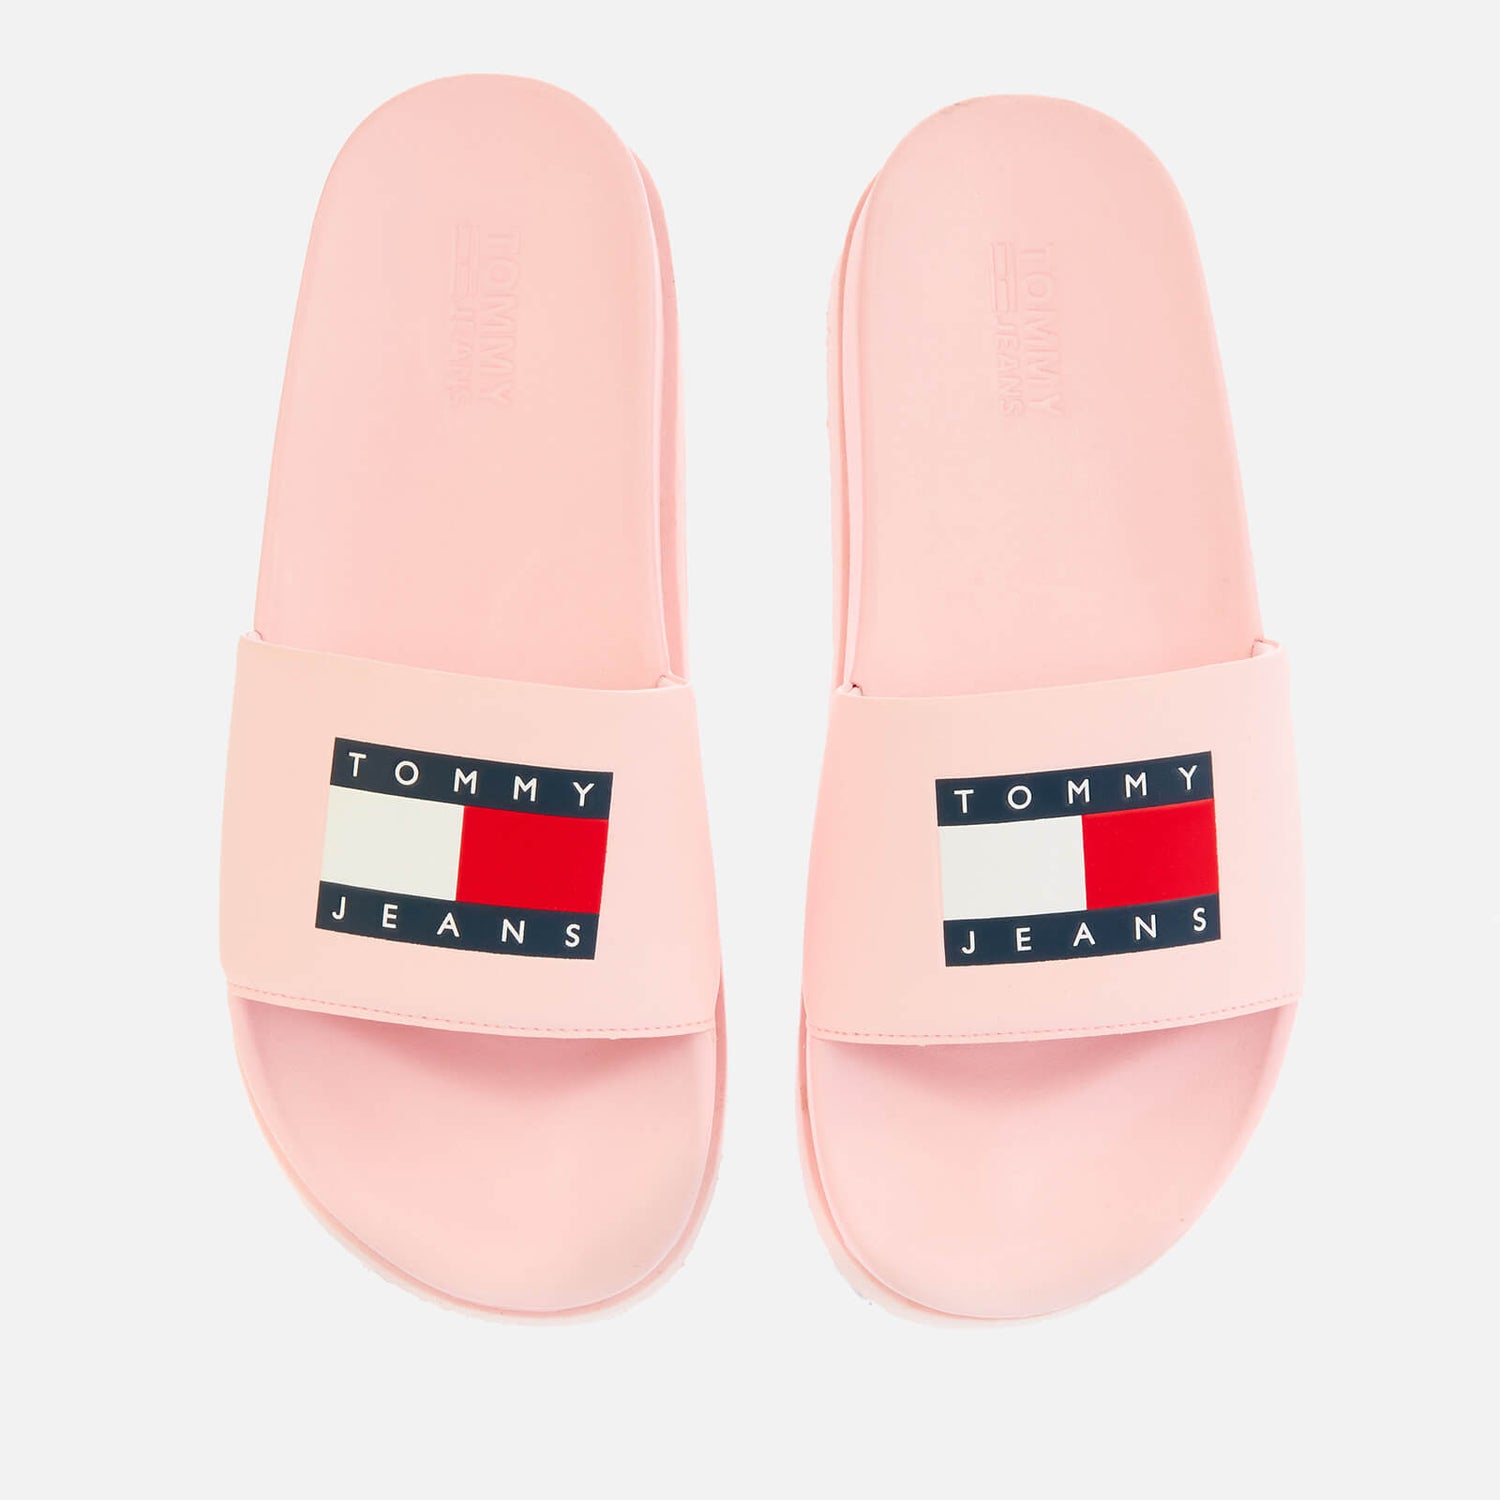 Tommy Jeans Women's Flatform Pool Slide Sandals - Light Pink